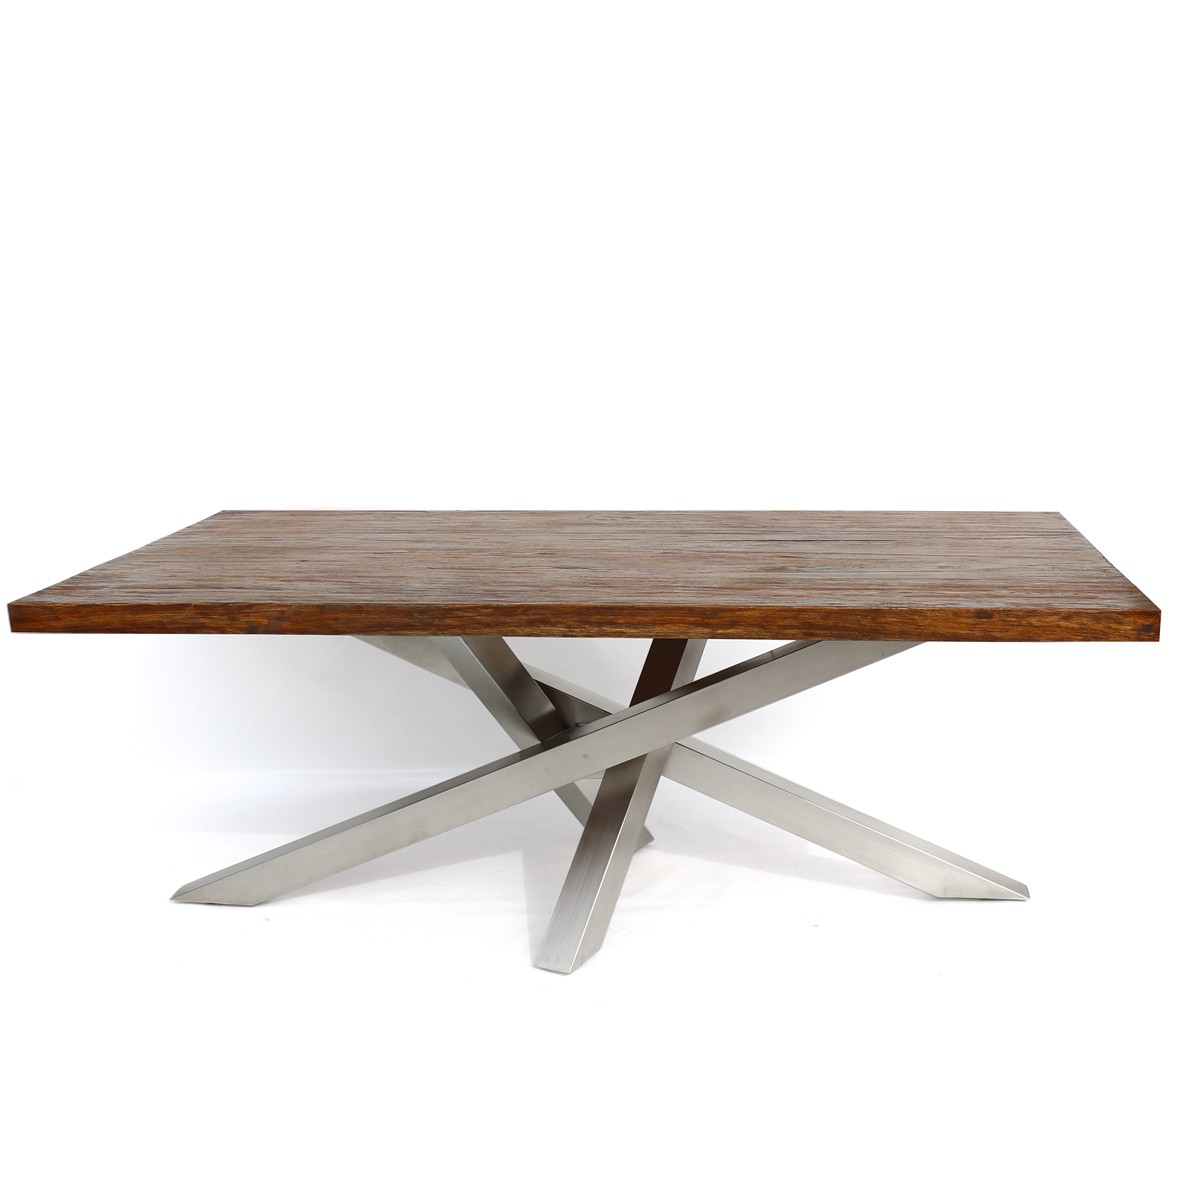 Tavolo moderno con base in acciaio inox satinato182x82xh72 cm